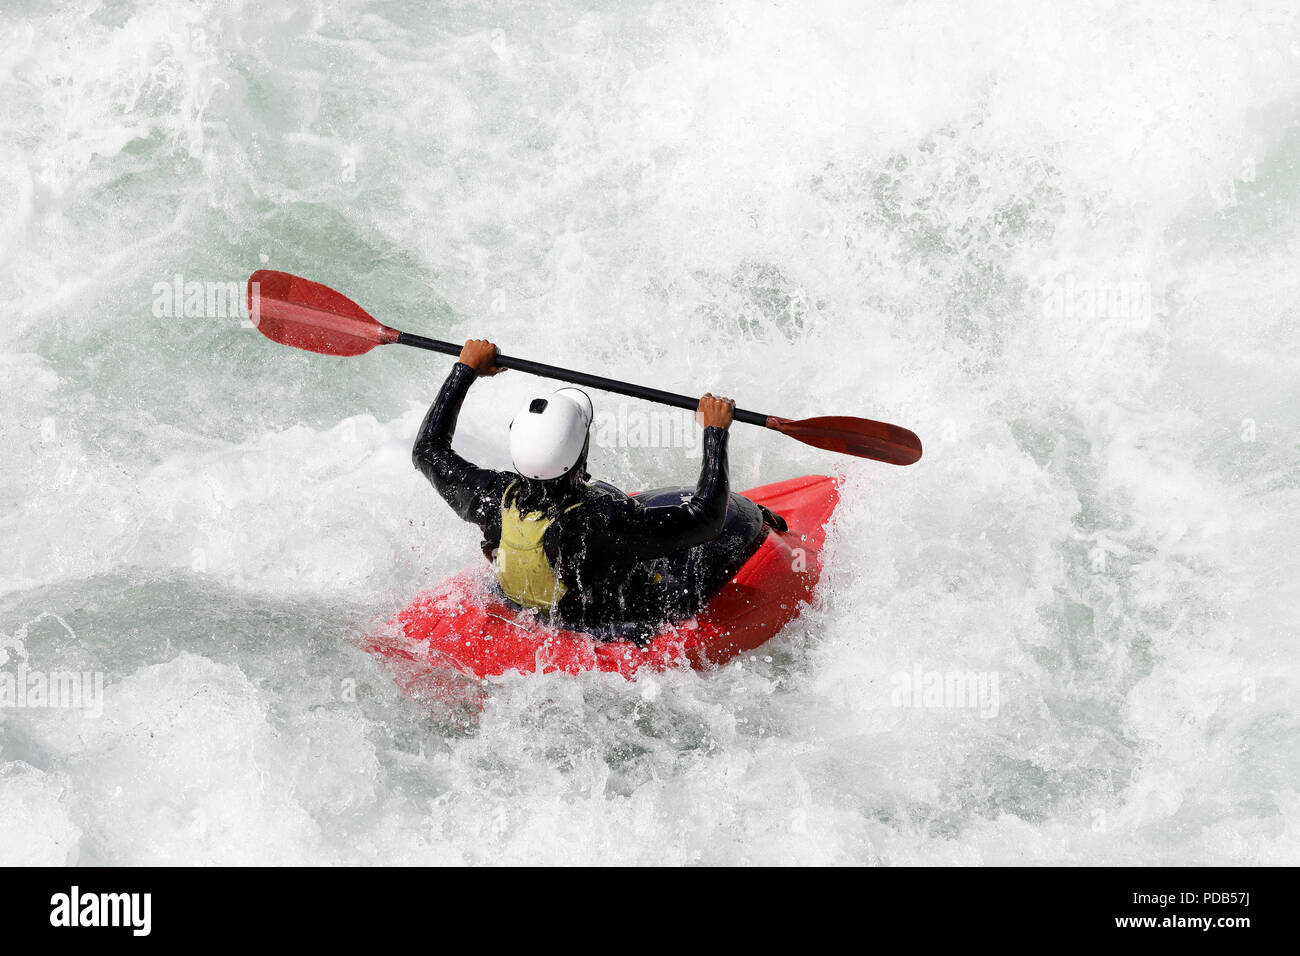 White water kayak sulle rapide del fiume Yosino in Giappone Foto Stock